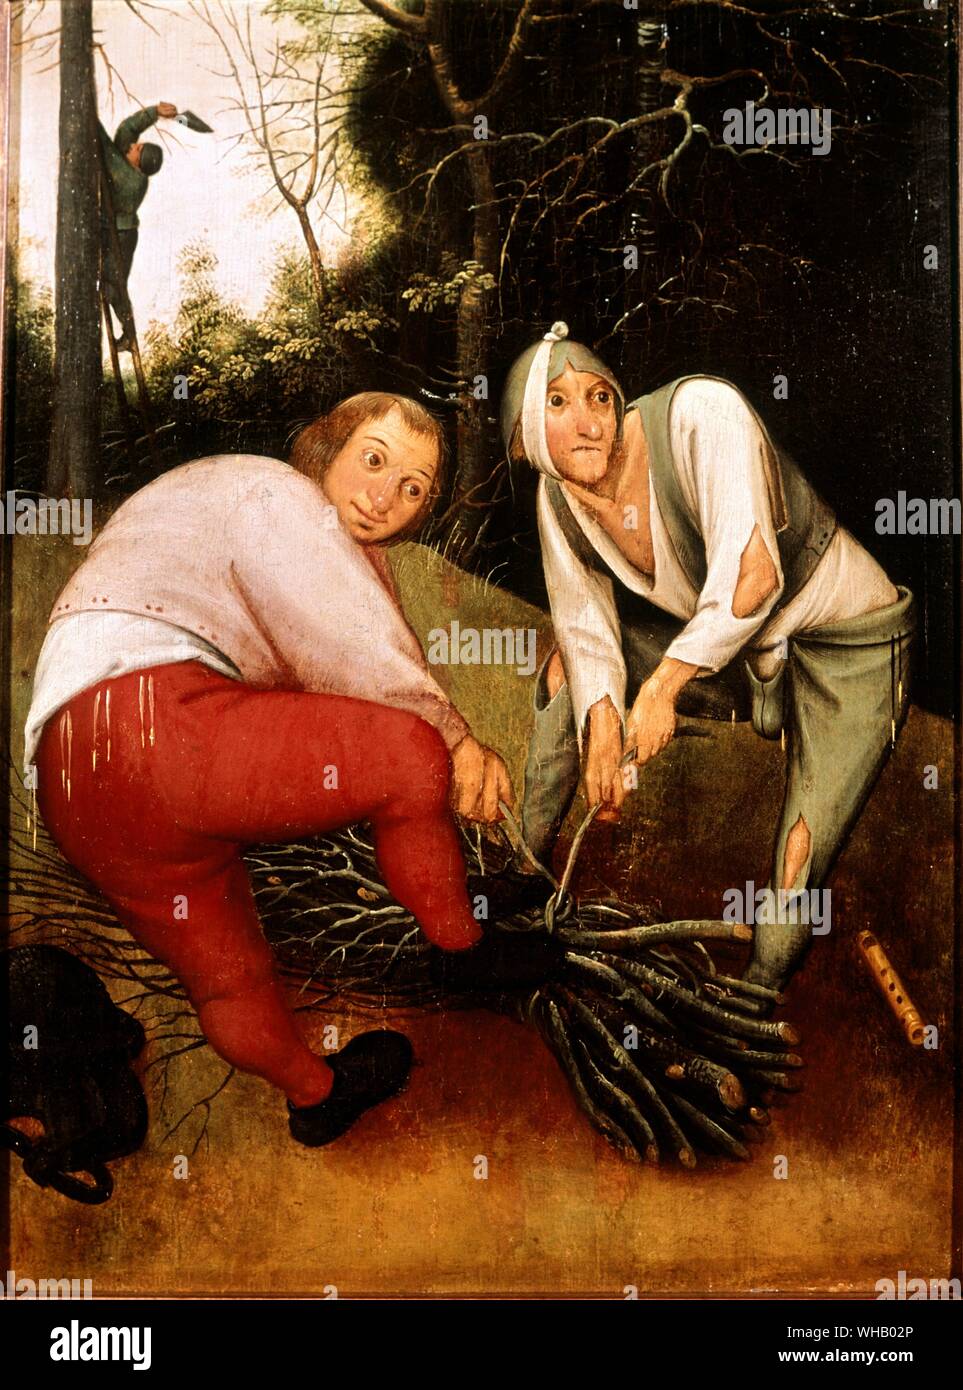 Due contadini fascine di legame. Artista Brueghel, Pieter il Giovane (c.1564-1638). Nel Barbiere Istituto di Belle Arti, Università di Birmingham. Pieter Brueghel il Giovane (1564 - 1638) era un fiammingo pittore rinascimentale, figlio di Pieter Brueghel il Vecchio. Quando lui aveva solo 5 anni, suo padre morì. Pieter Brueghel il Giovane ha ricevuto la sua formazione artistica dal Flemish pittore paesaggista Gilles van Coninxloo. Brueghel più tardi anche sposato la sorella del suo padrone. Pieter Brueghel il Giovane divenne un maestro nel 1585. Egli ha poi avviato alla pittura di paesaggi e soggetti religiosi e fantasia Foto Stock